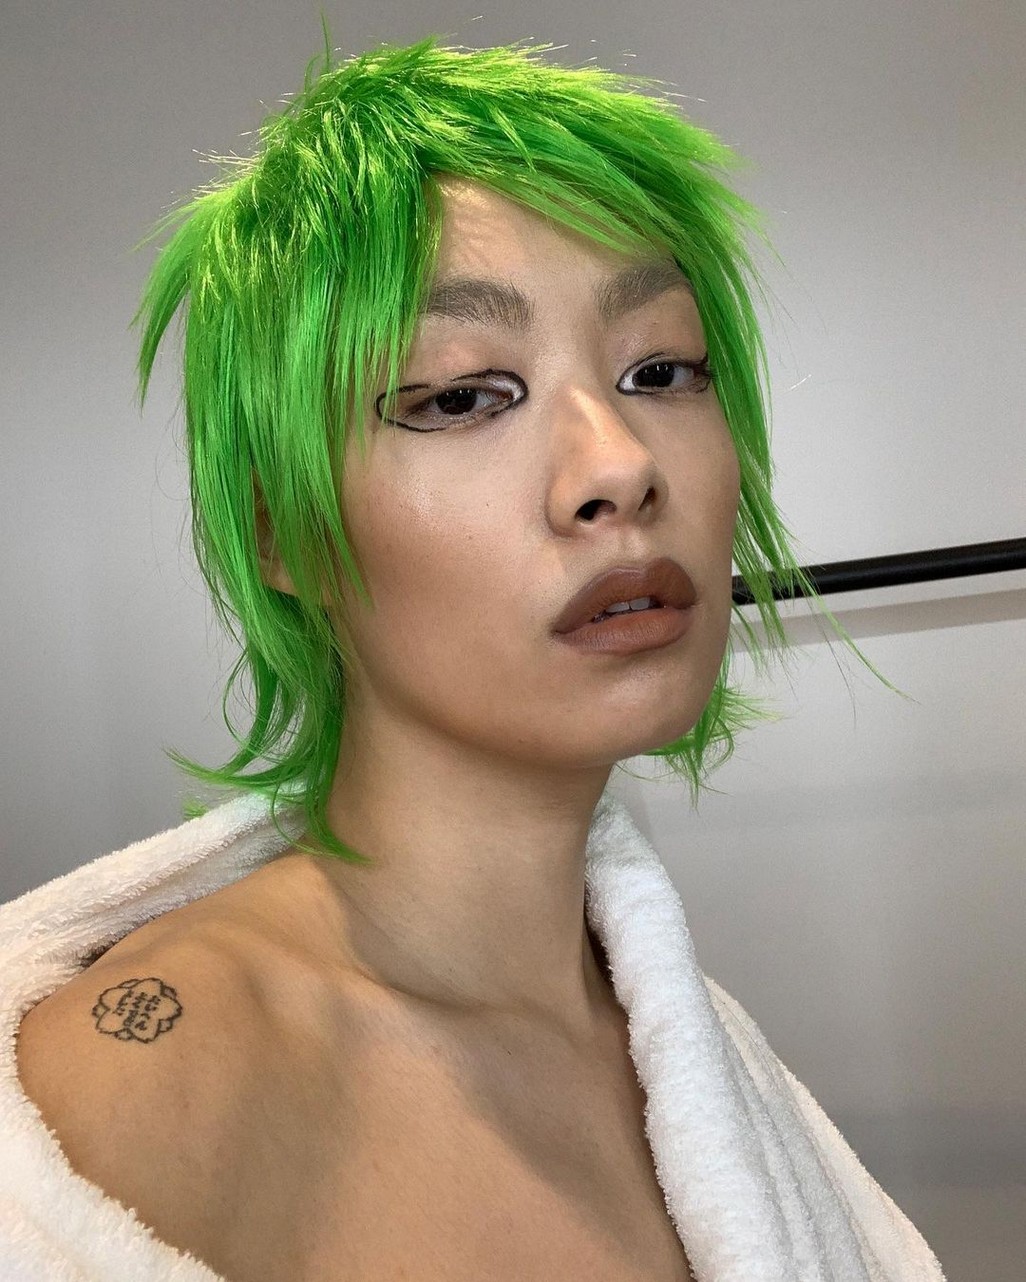 Hot Selfie Of Rina Sawayama TheFappening.Pro 7 - Rina Sawayama Nude And Sexy (59 Photos And Videos)